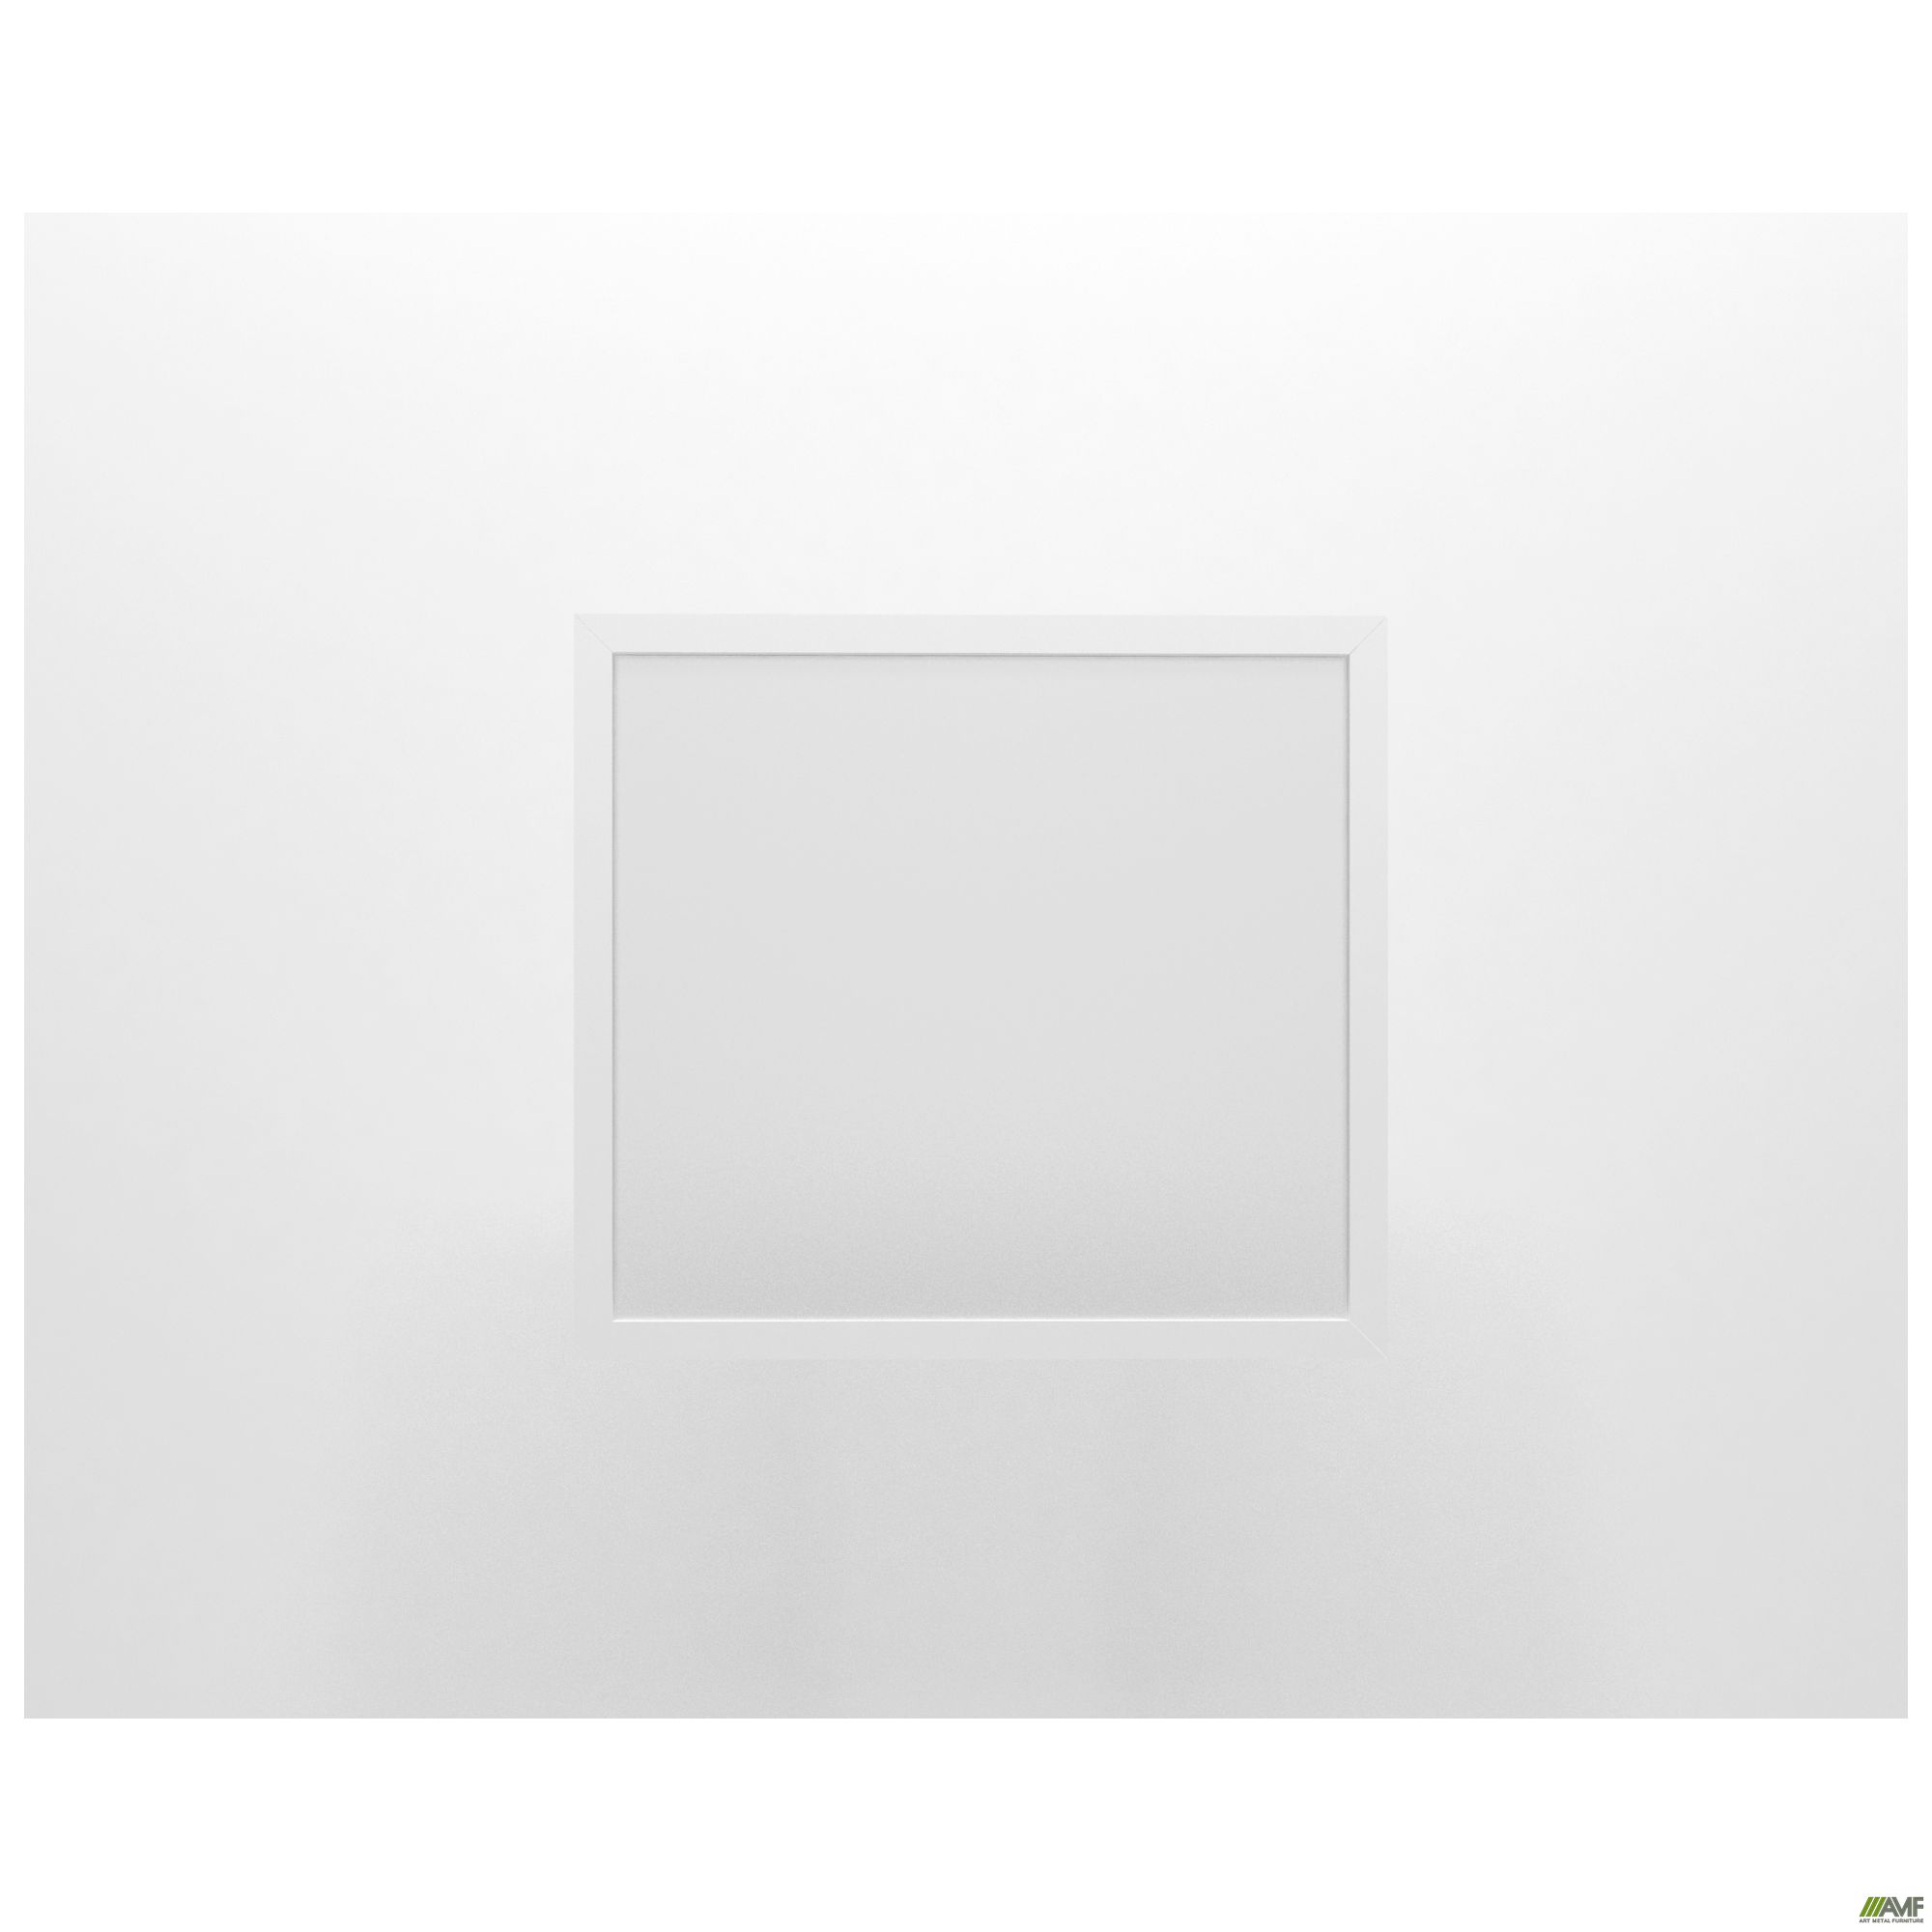 Фото 2 - Фасад стекло Delta DL-713R (426х391х20мм) профиль белый 